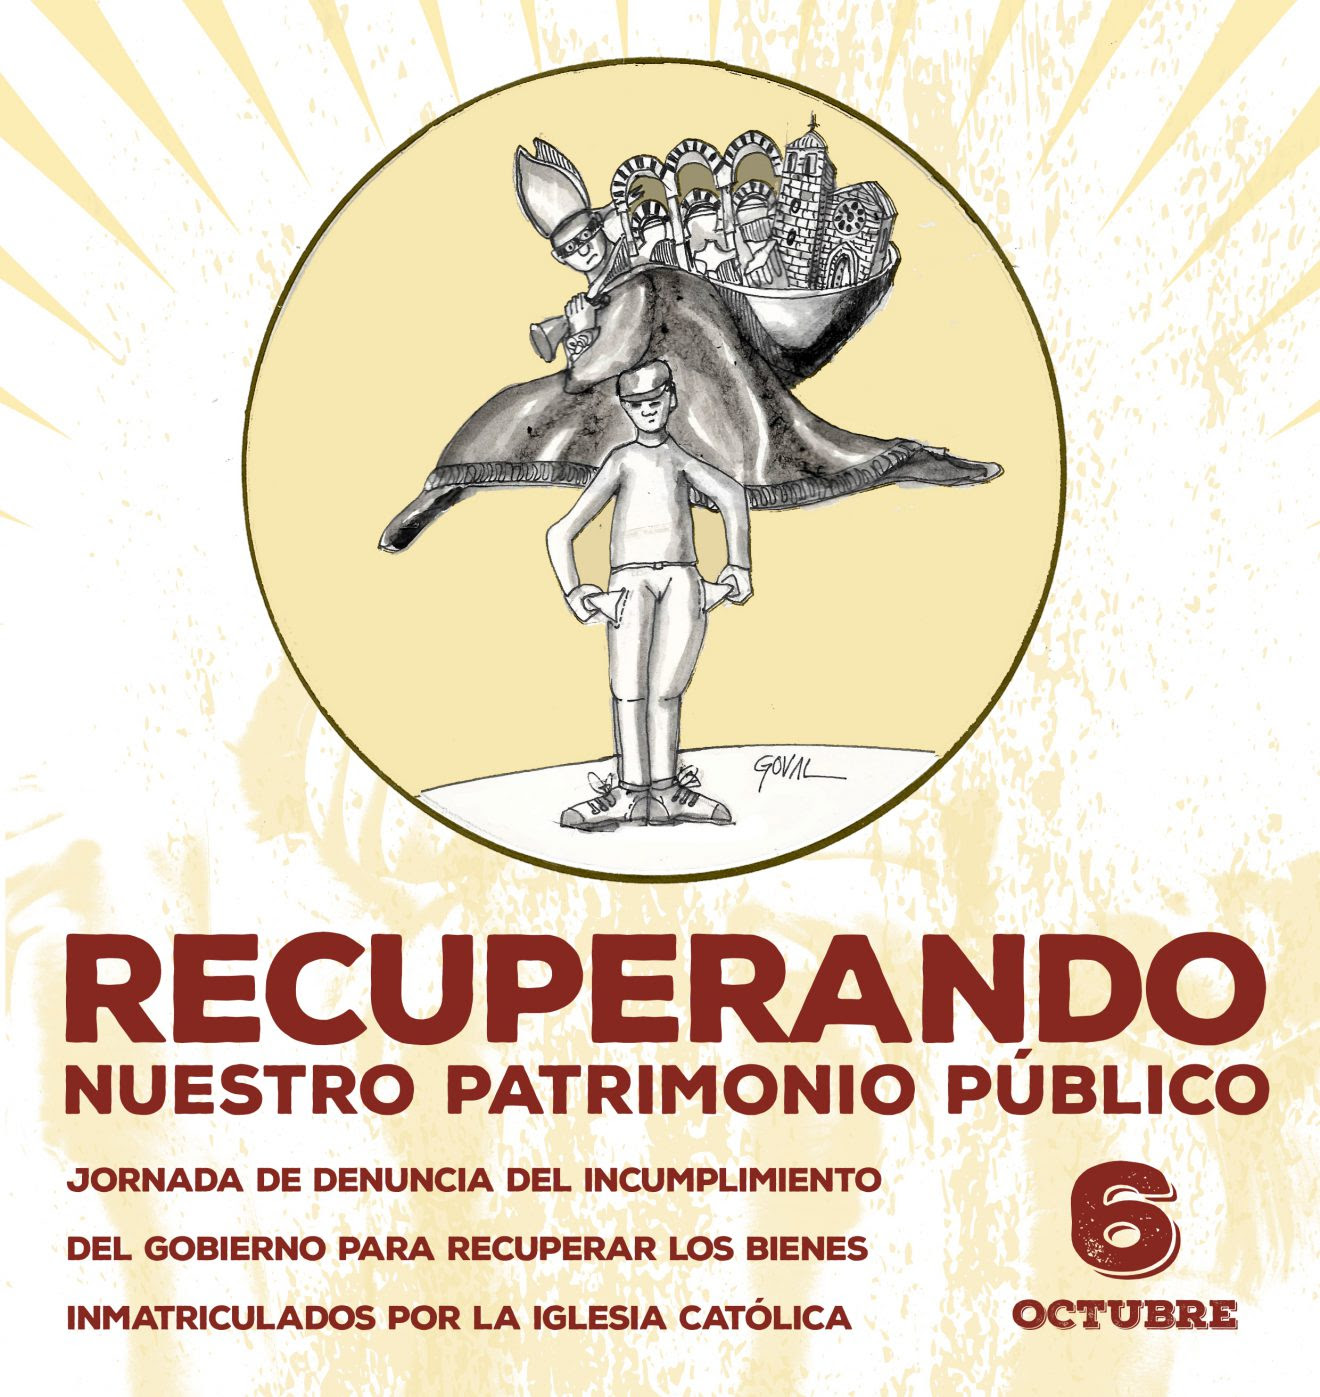 El 6 de octubre en Madrid, recuperemos nuestro patrimonio: Jornada de denuncia del incumplimiento del gobierno ante el expolio de la iglesia católica